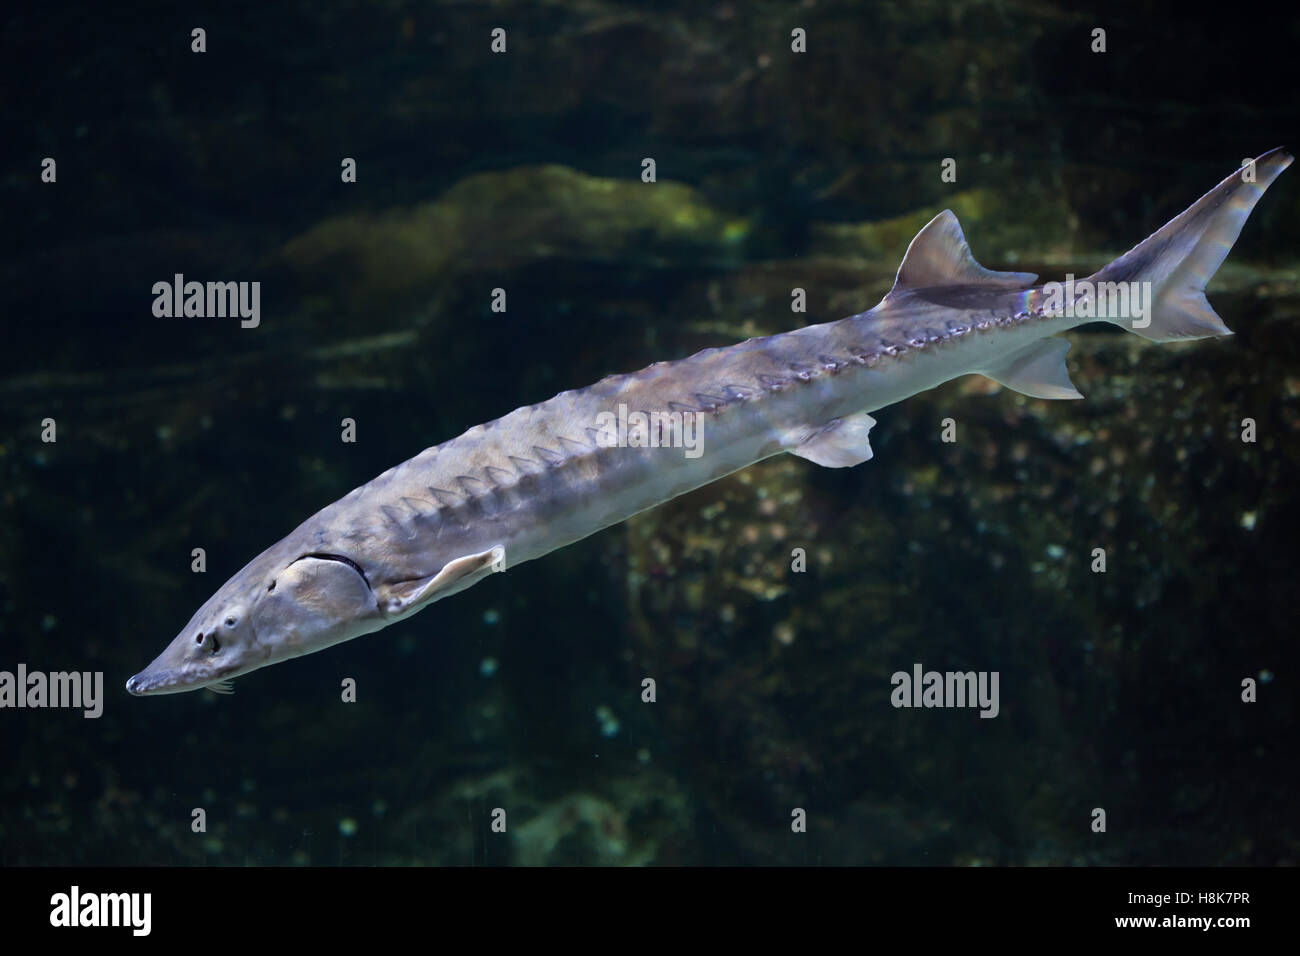 European sea sturgeon (Acipenser sturio), also known as the Atlantic sturgeon. Stock Photo